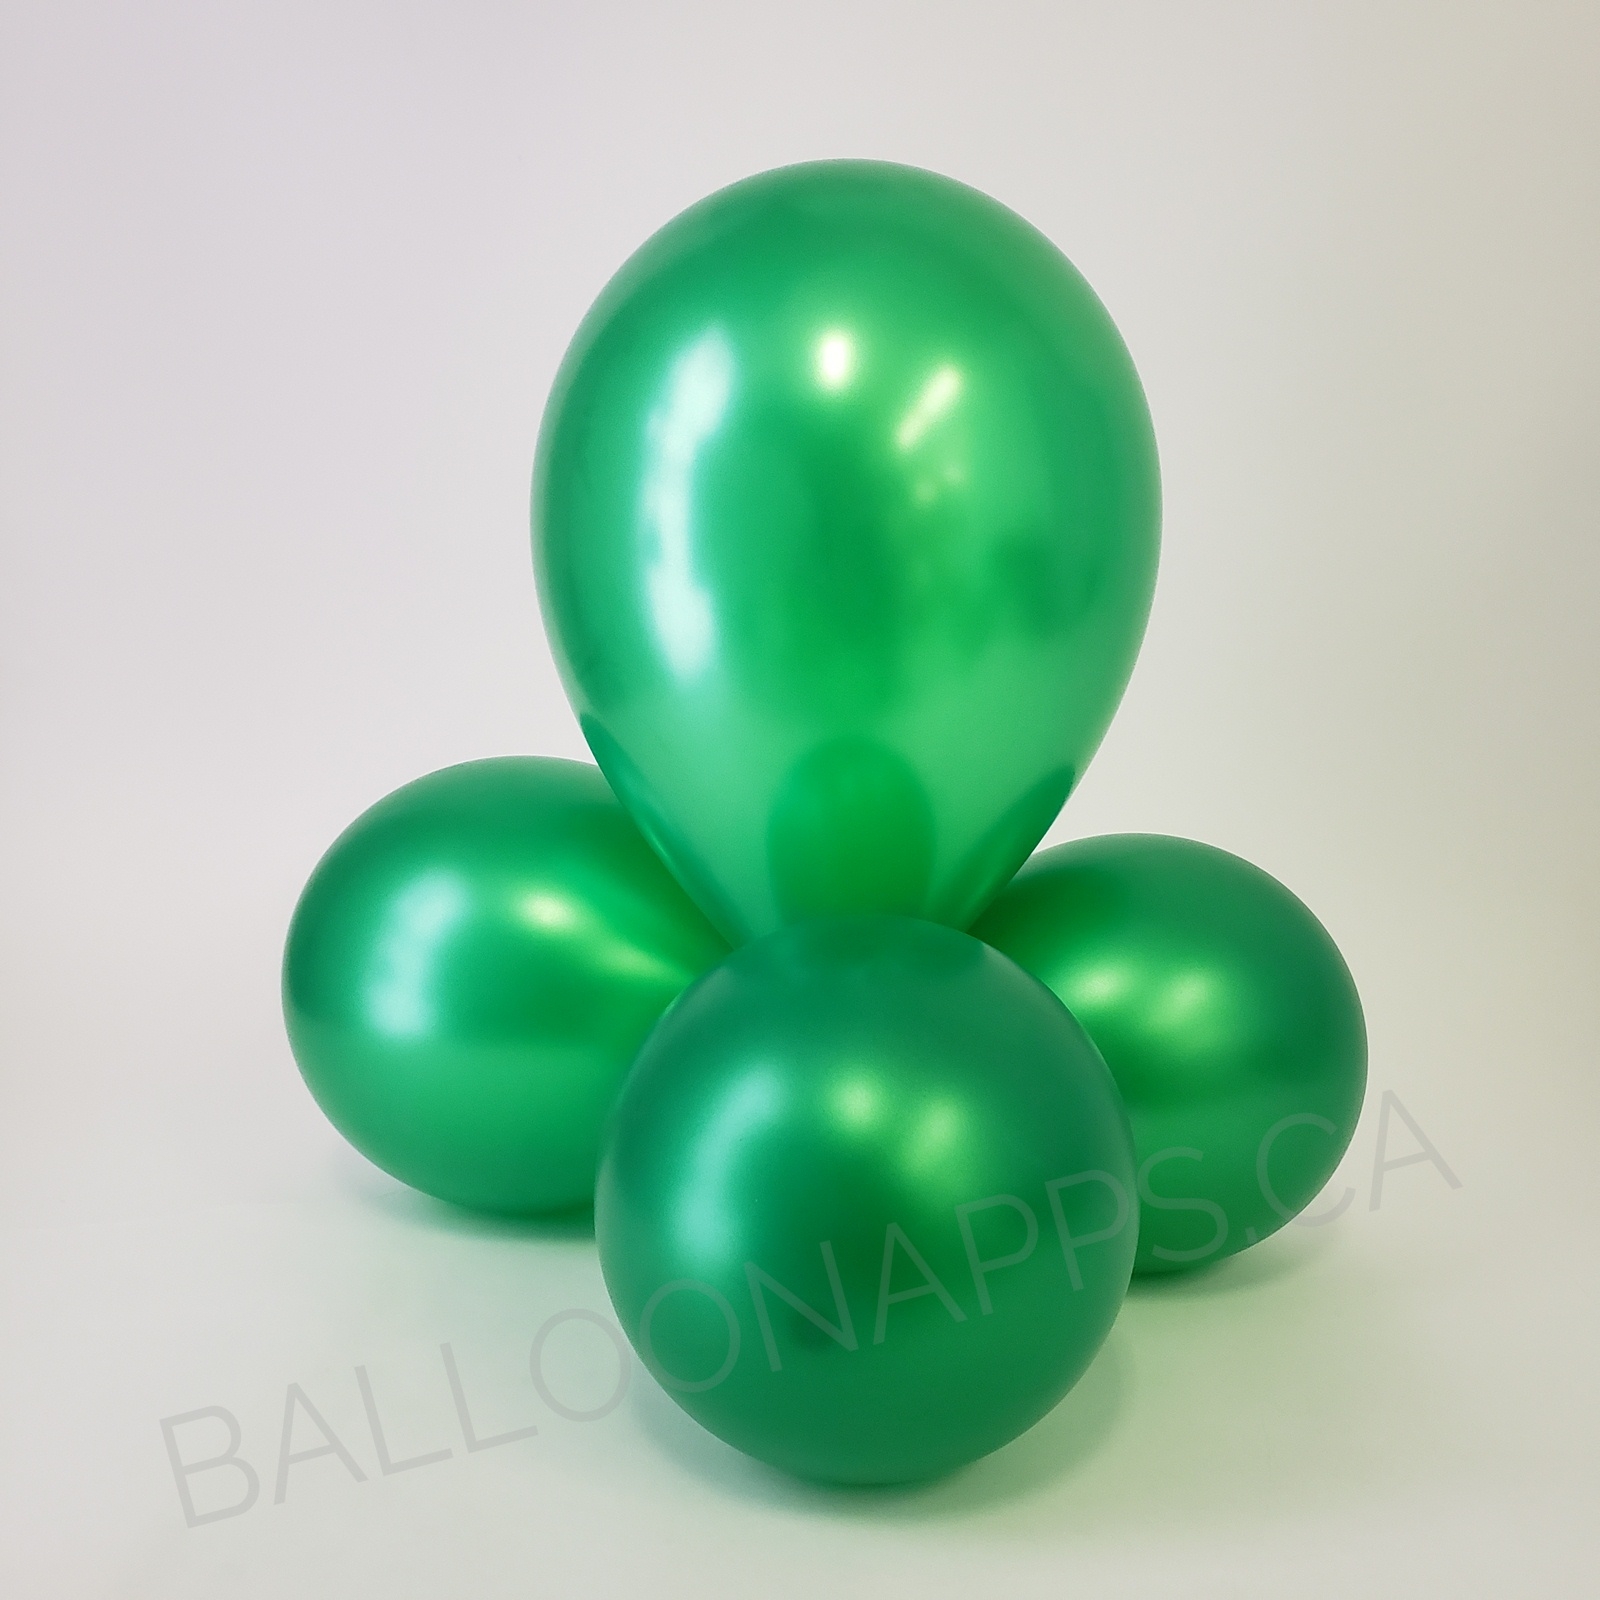 balloon texture BET (100) 160 Metallic Green balloons